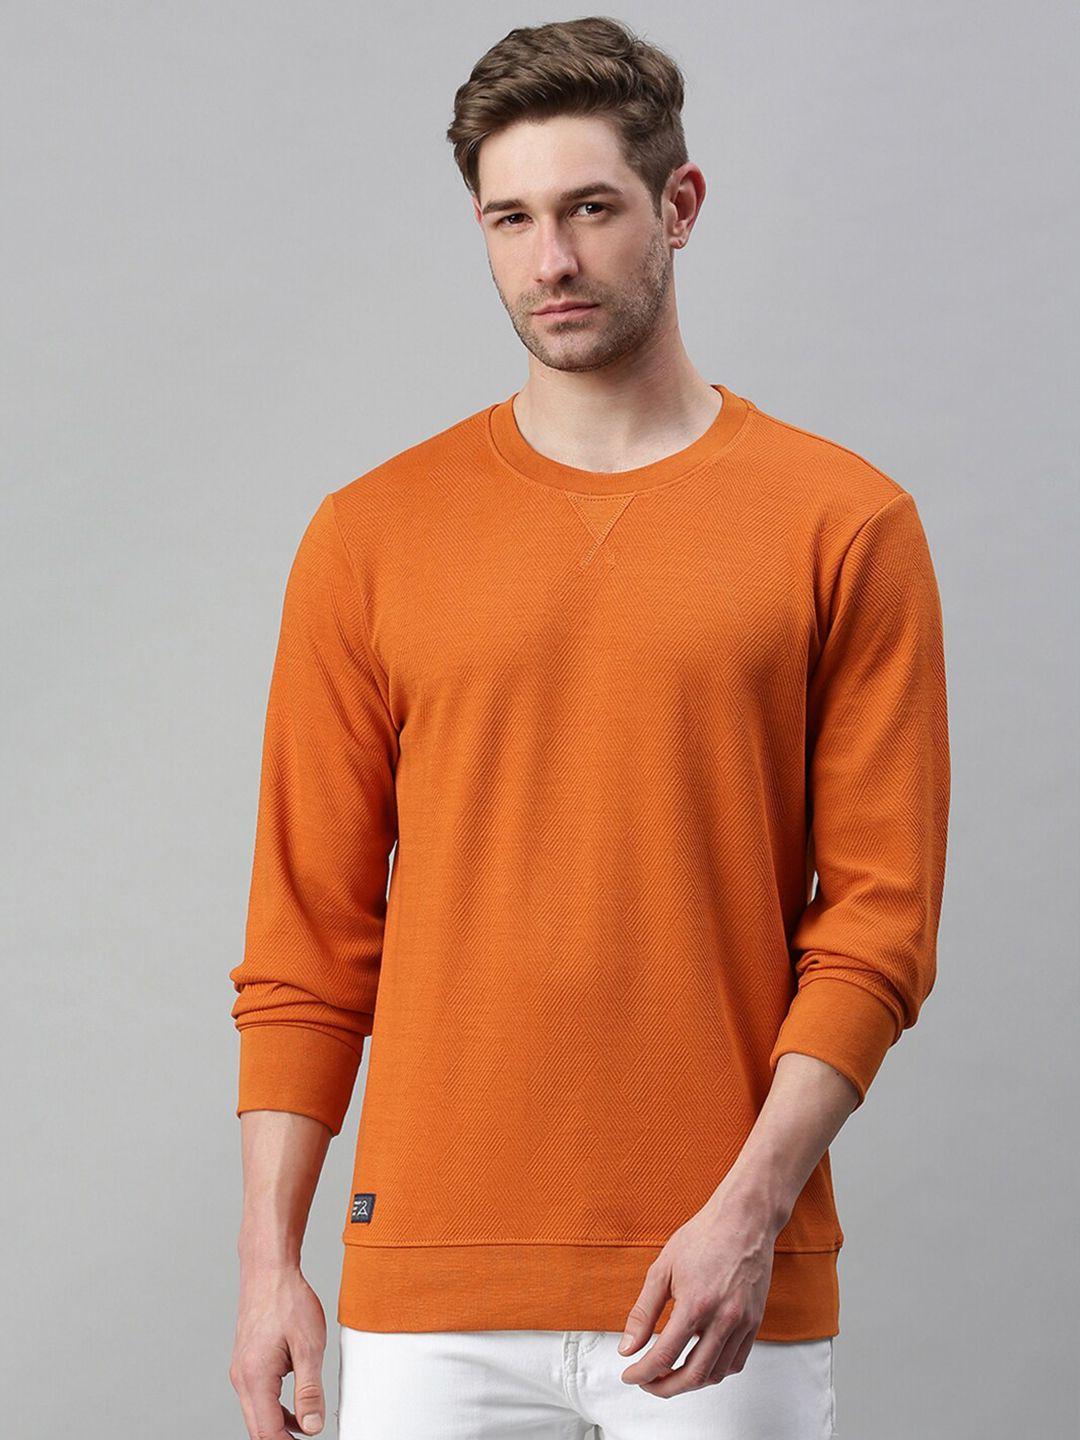 showoff-men-orange-sweatshirt